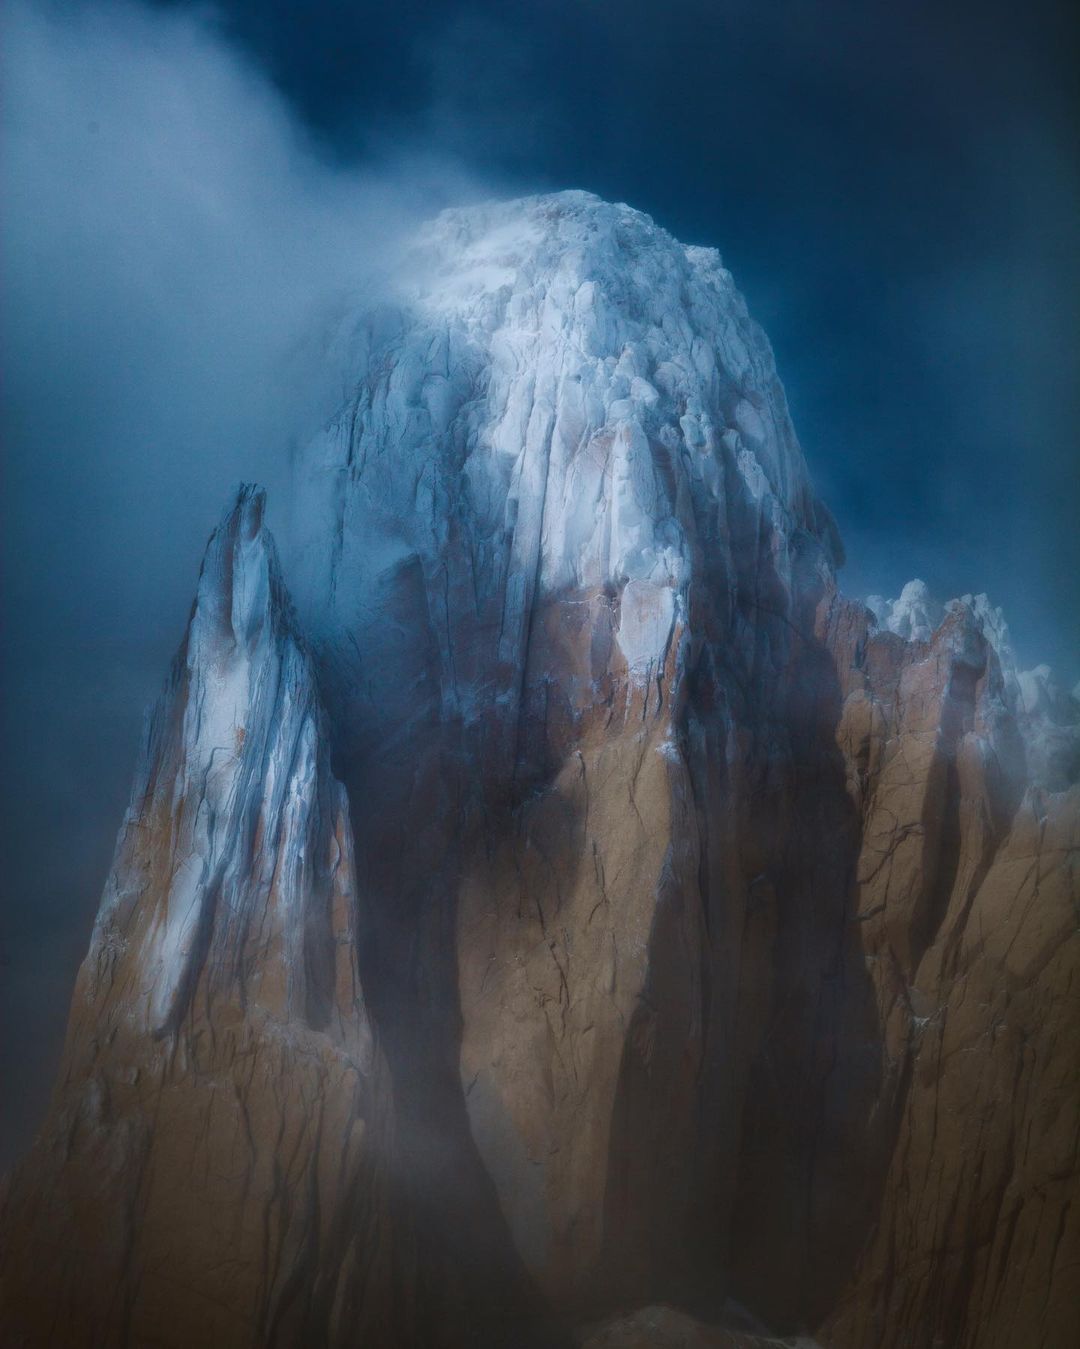 Завораживающие снимки из путешествий Люка Конаржевски планета,природа,тревел-фото